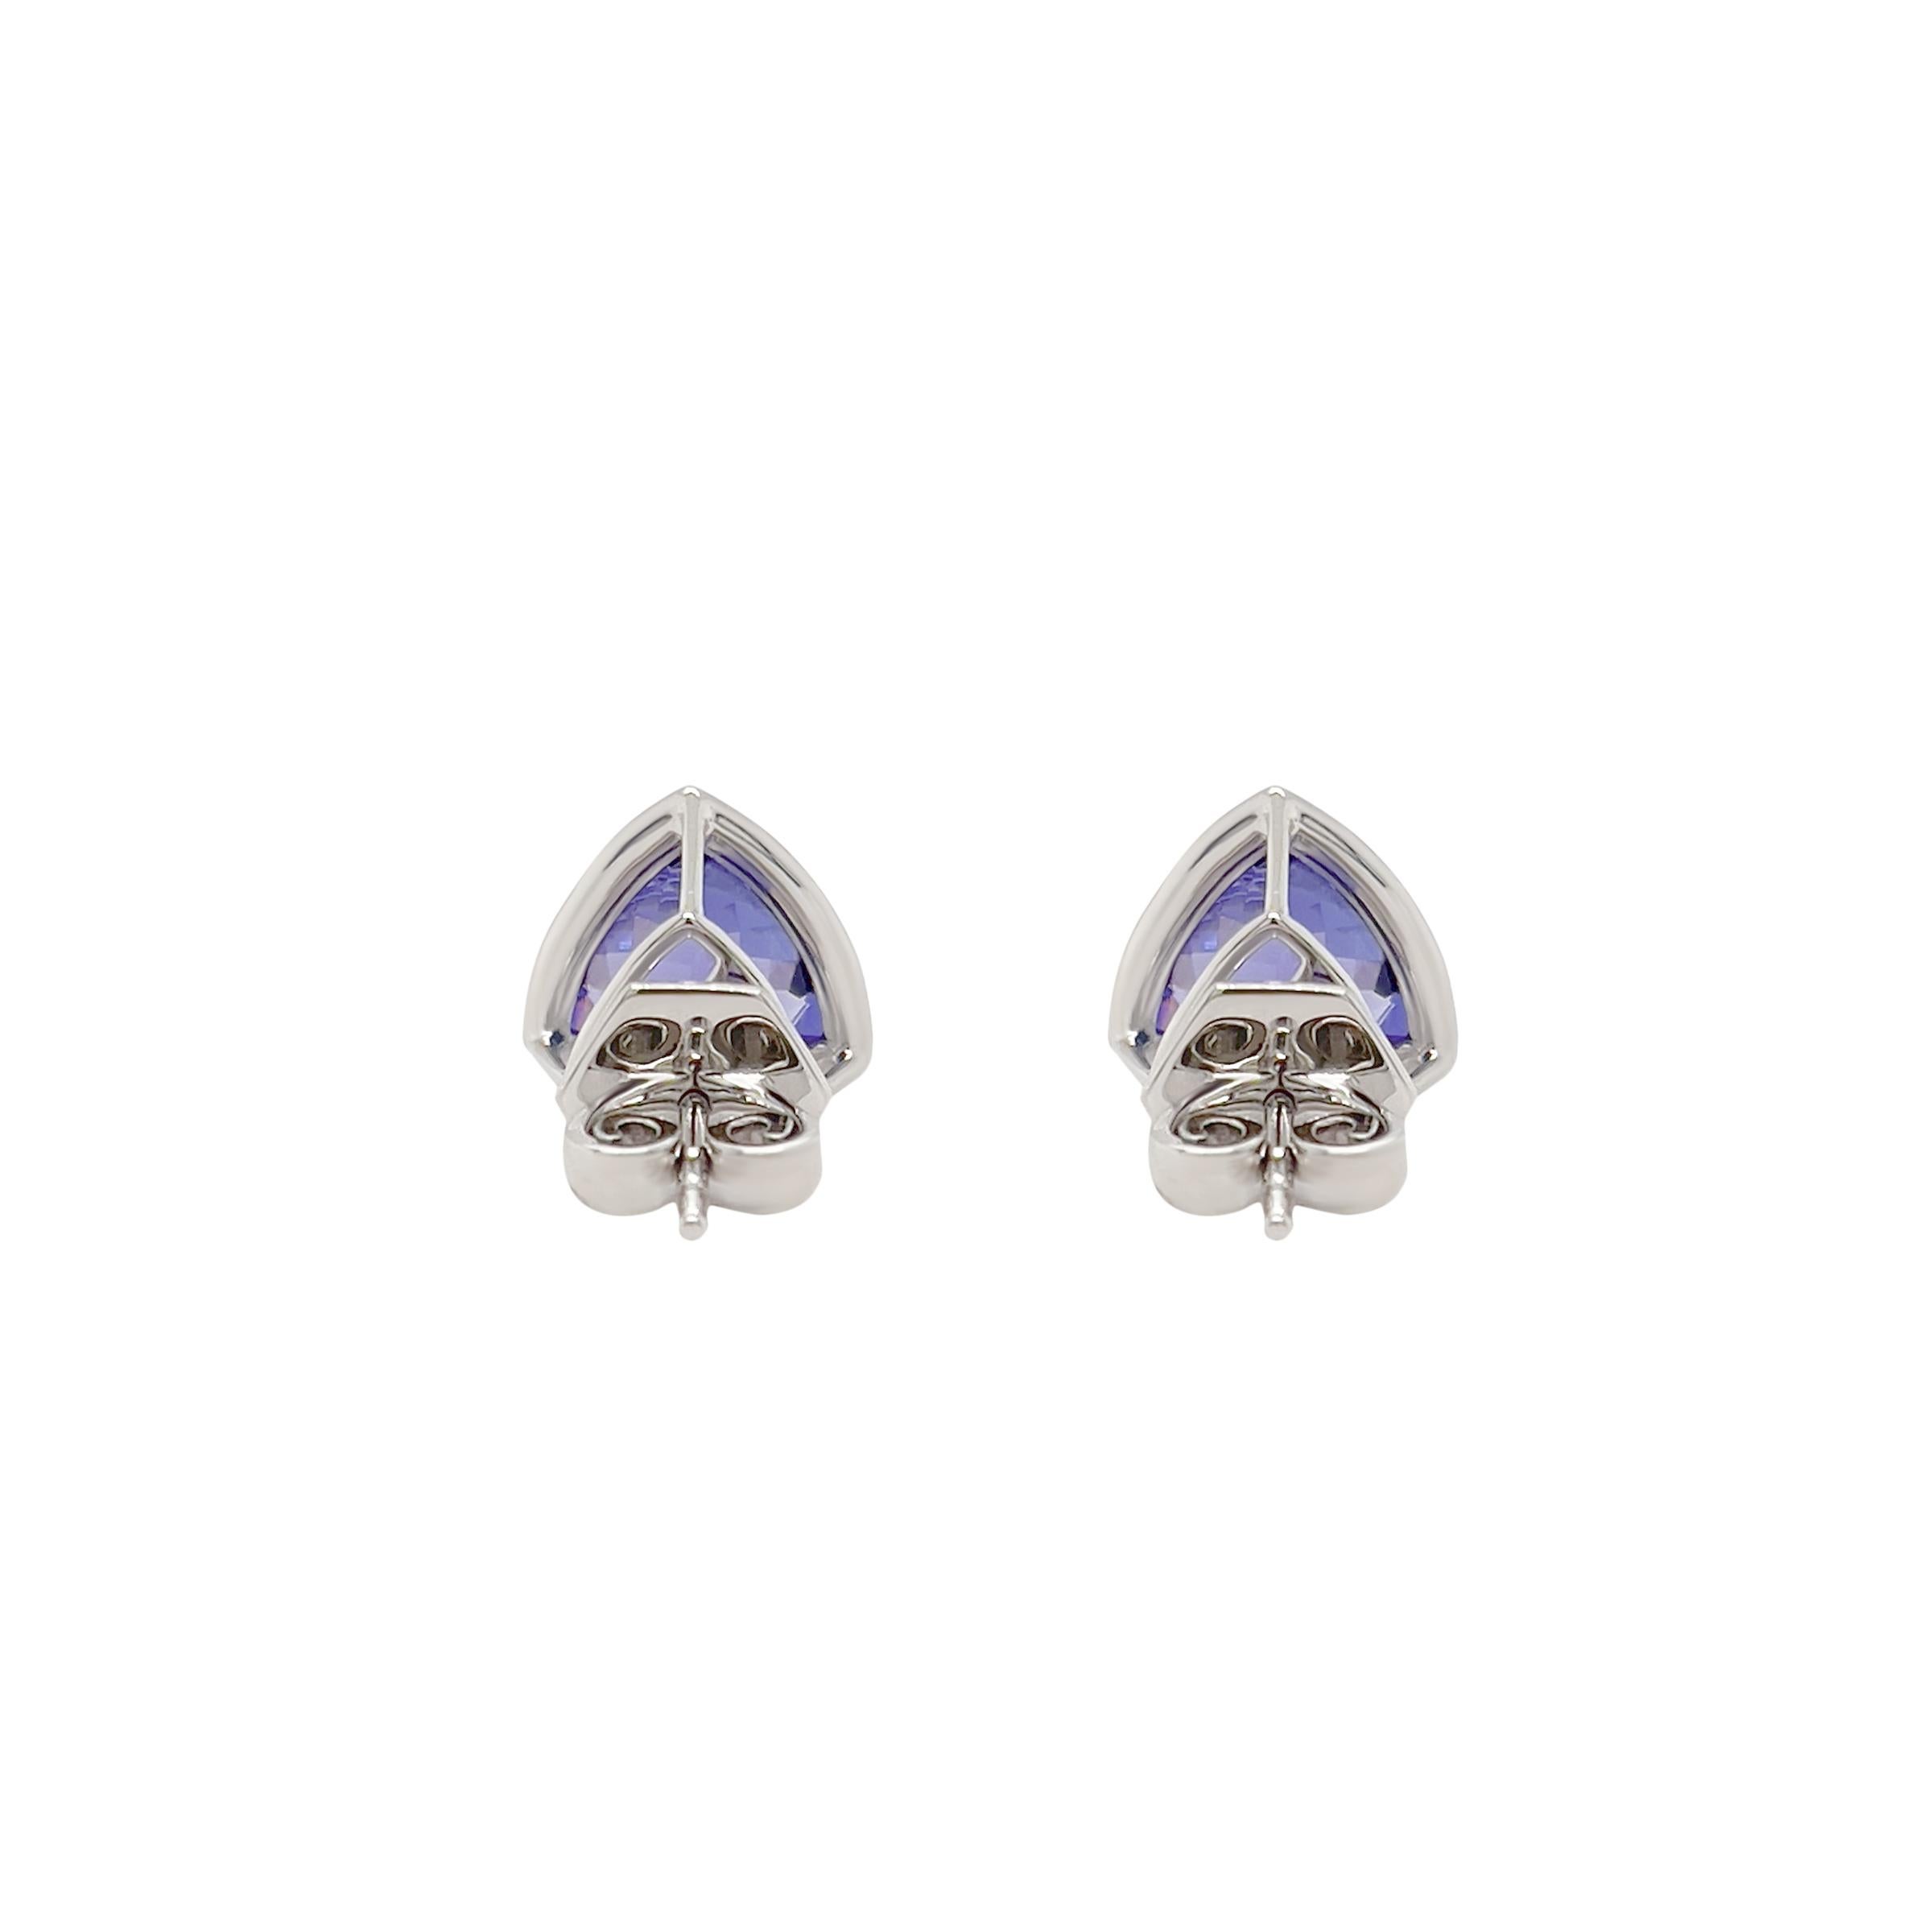 Diese atemberaubenden 3,61ct natürlichen Tansanit-Ohrringe im Billionen-Schliff sind ein echter Hingucker. Der tiefe, samtige Blauton des Tansanits wird durch den strahlend weißen Glanz des Diamanthalos und die luxuriöse Fassung aus 18 Karat